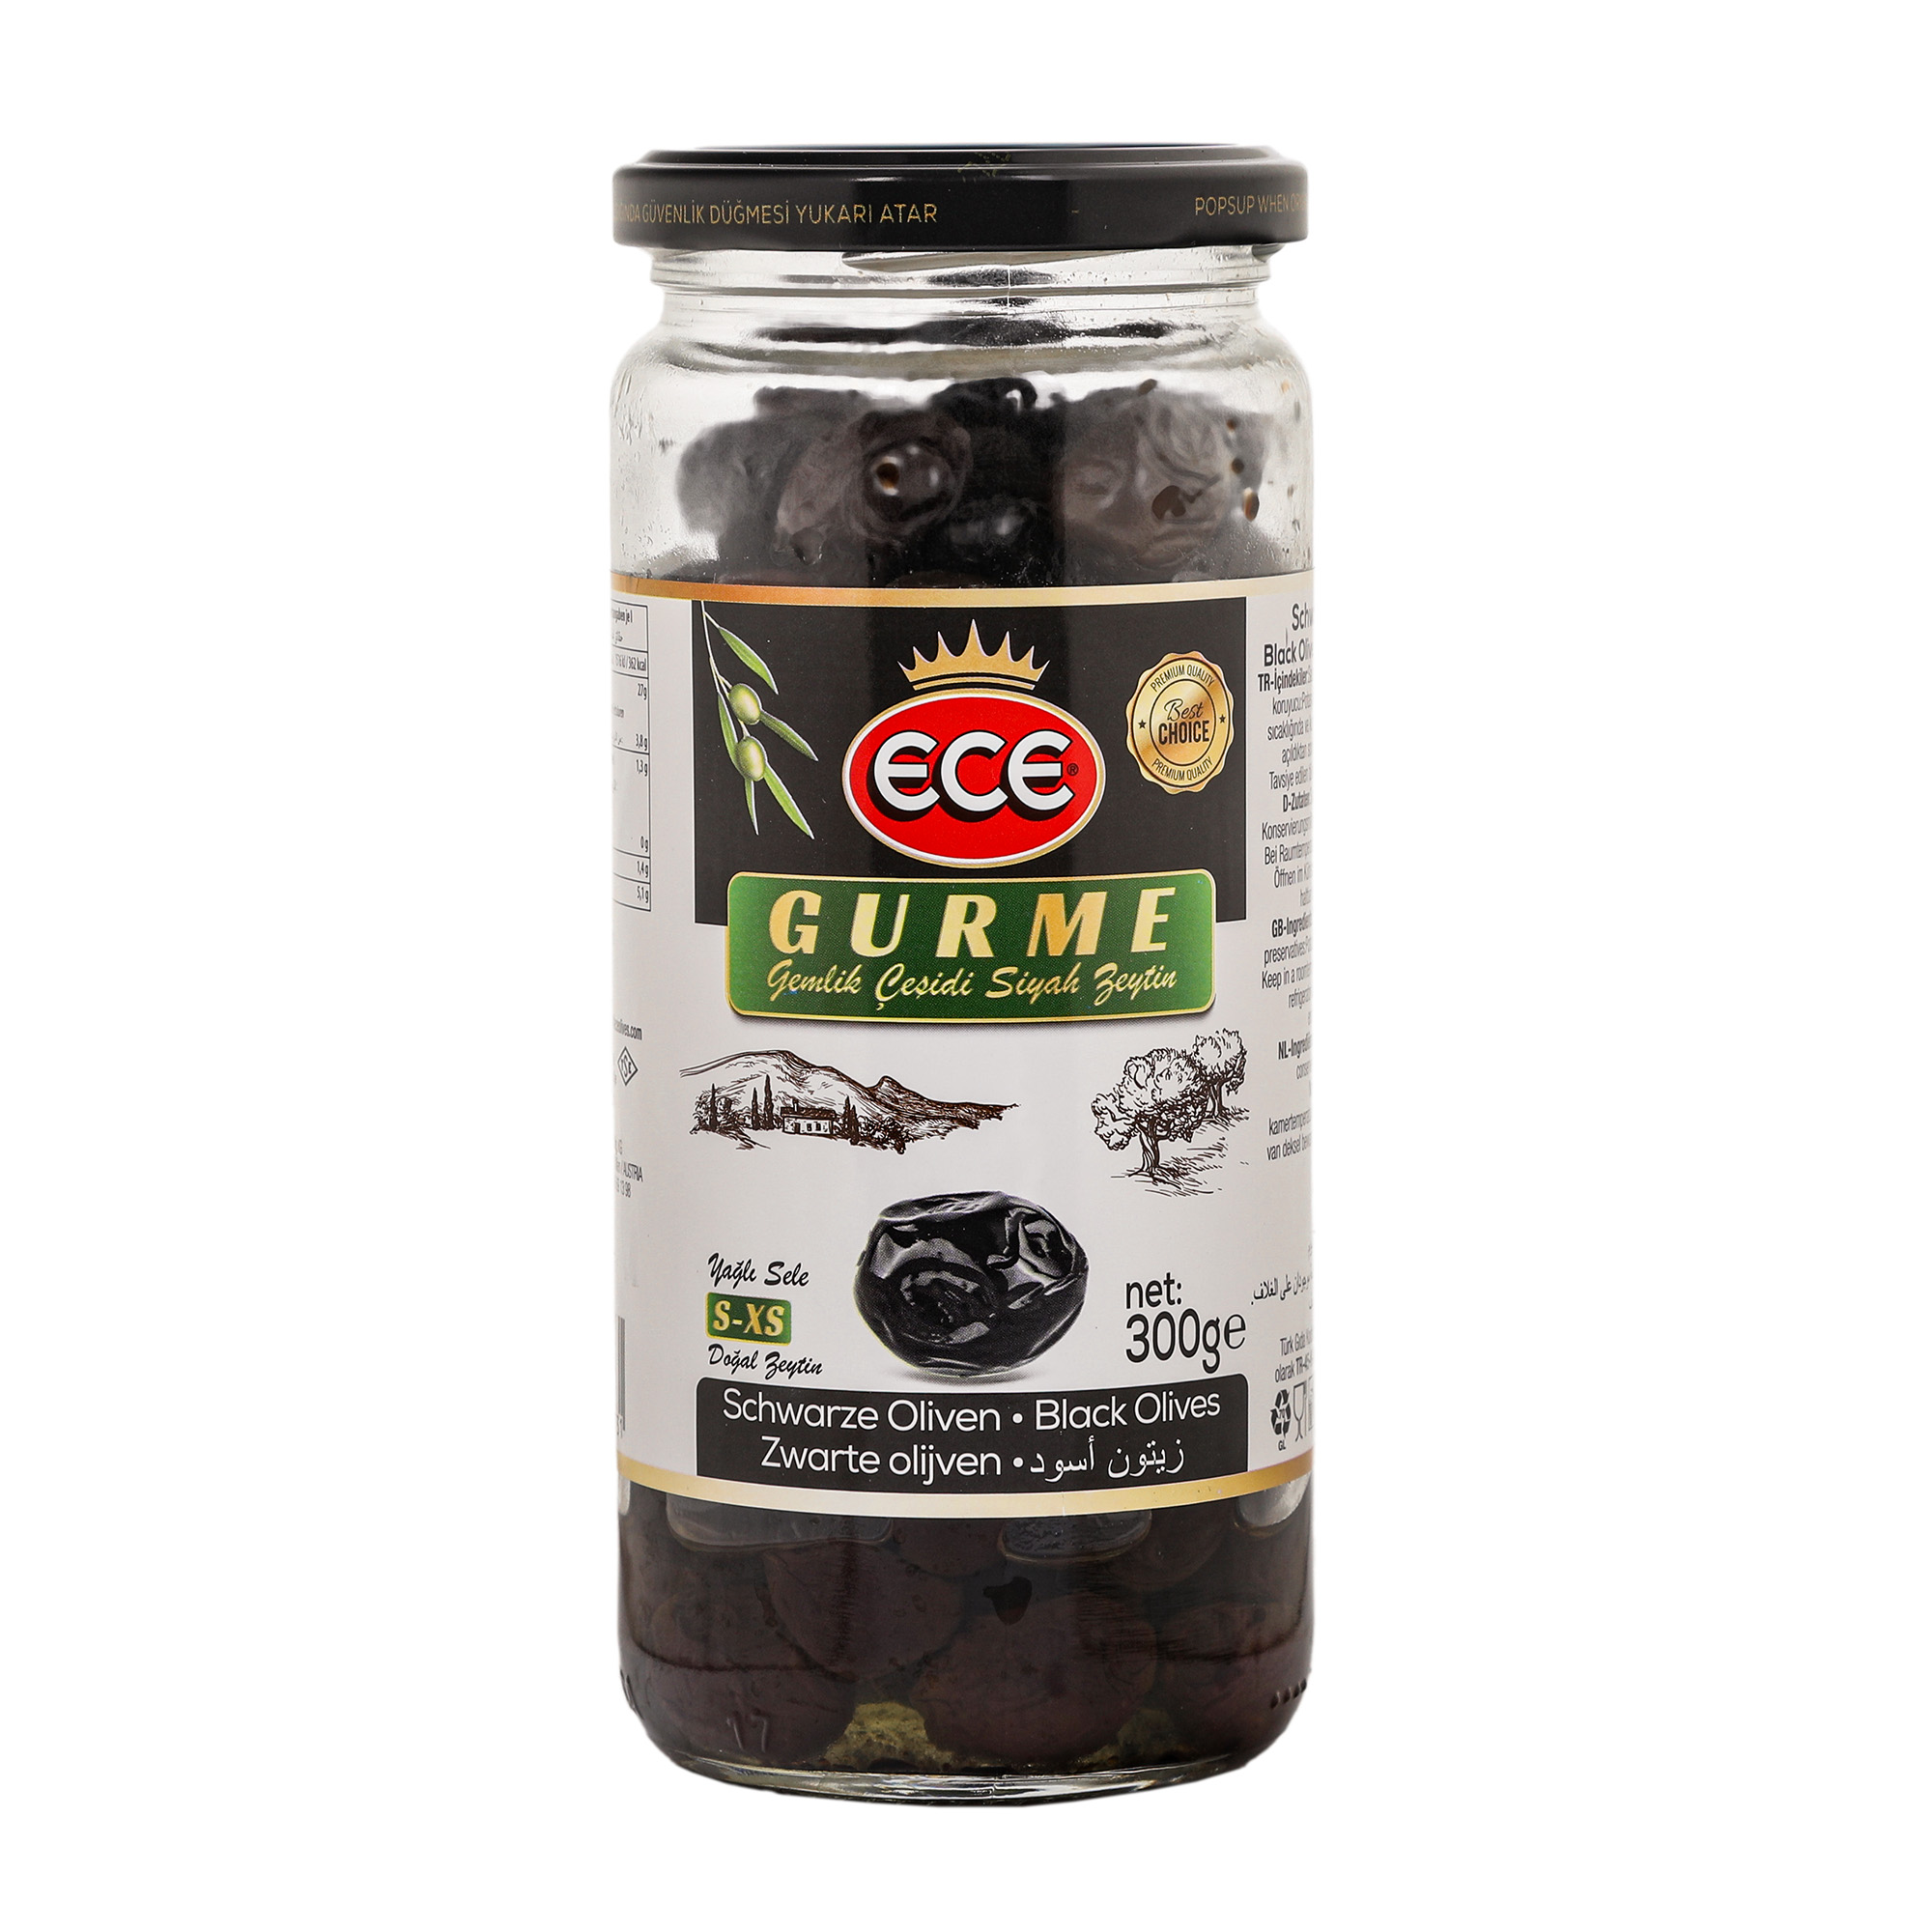 Оливки черные Ece Gurme в масле с косточкой, 300 г маслины delphi натуральные с косточкой в рассоле 350 г